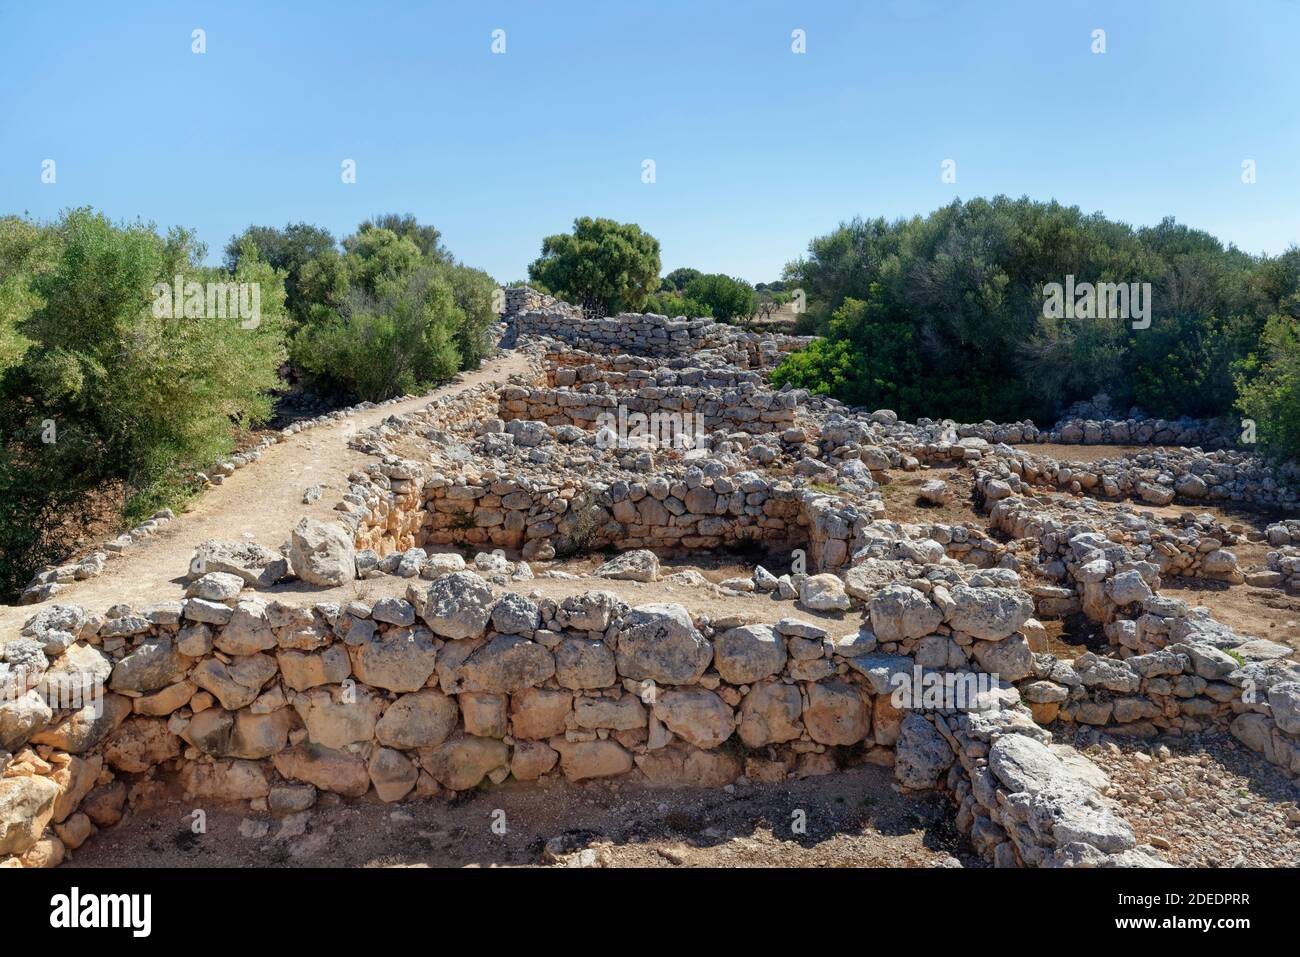 Ruinen von alten Steinhäusern in Capocorb Vell, einer Siedlung, die von der alten talaiotischen Kultur, Cala Pi, Mallorca gebaut wurde. Stockfoto